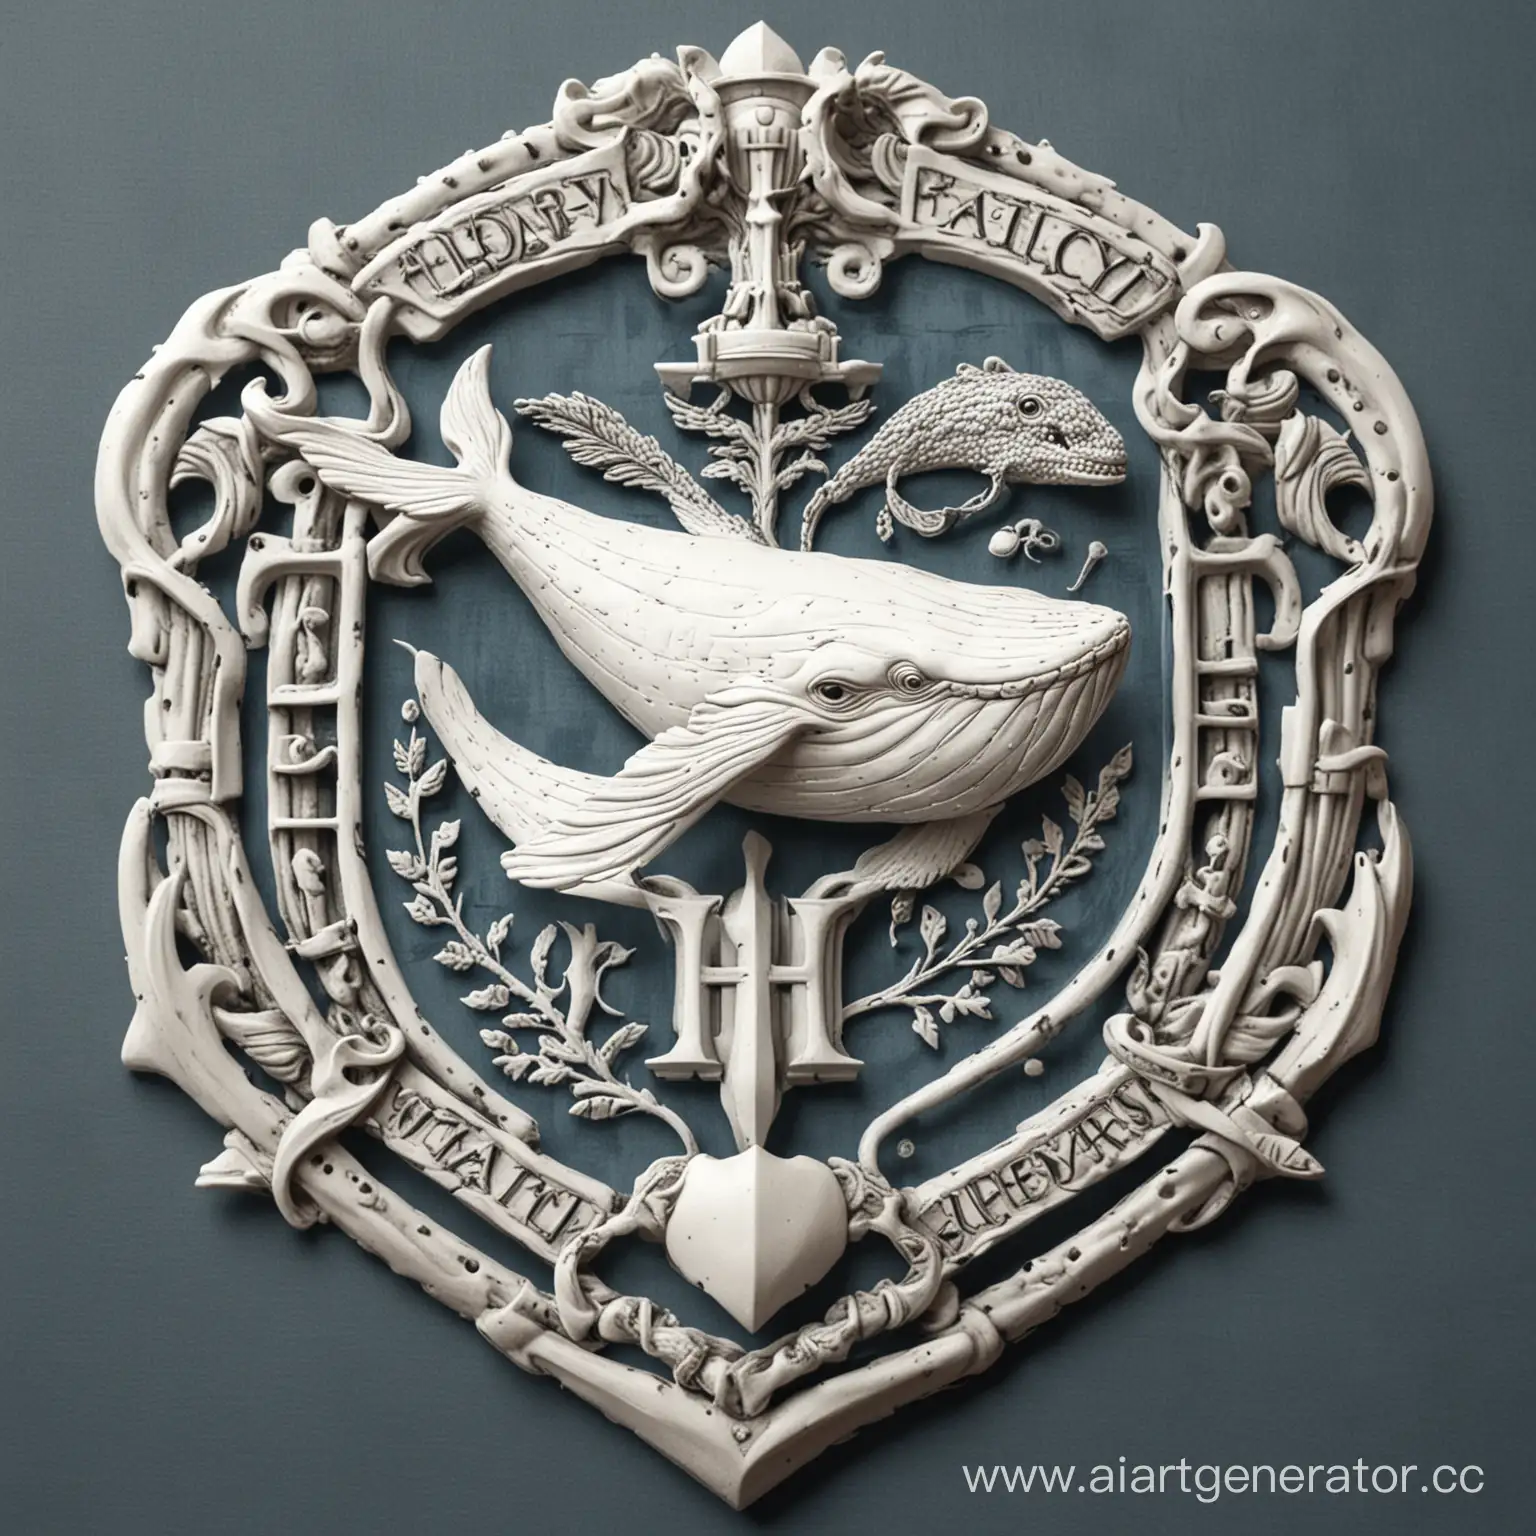 Герб нового факультета в Хогвартсе, белый цвет, кит